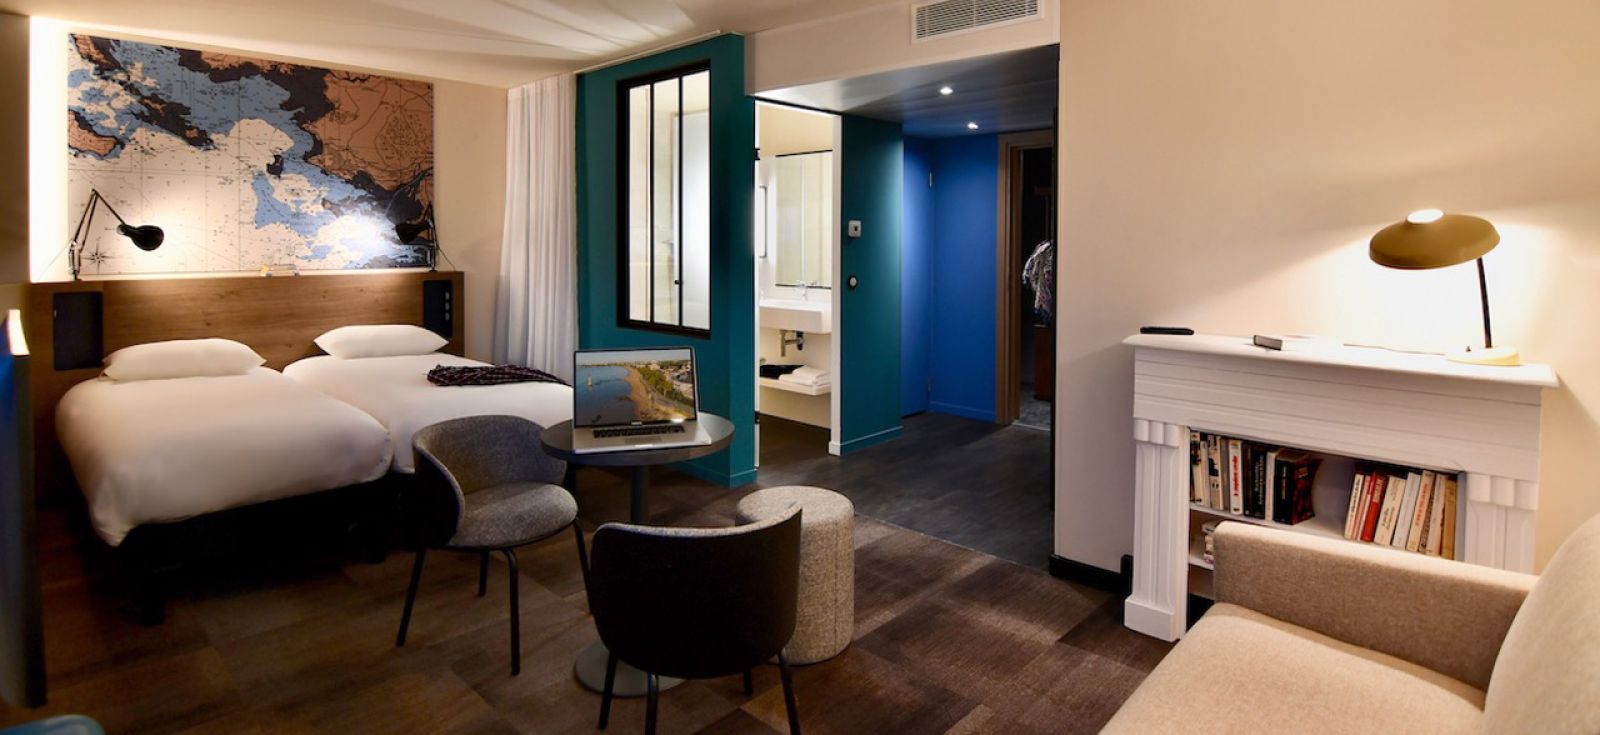 Suite 2 lits simples et sofa hotel ibis styles saint-nazaire